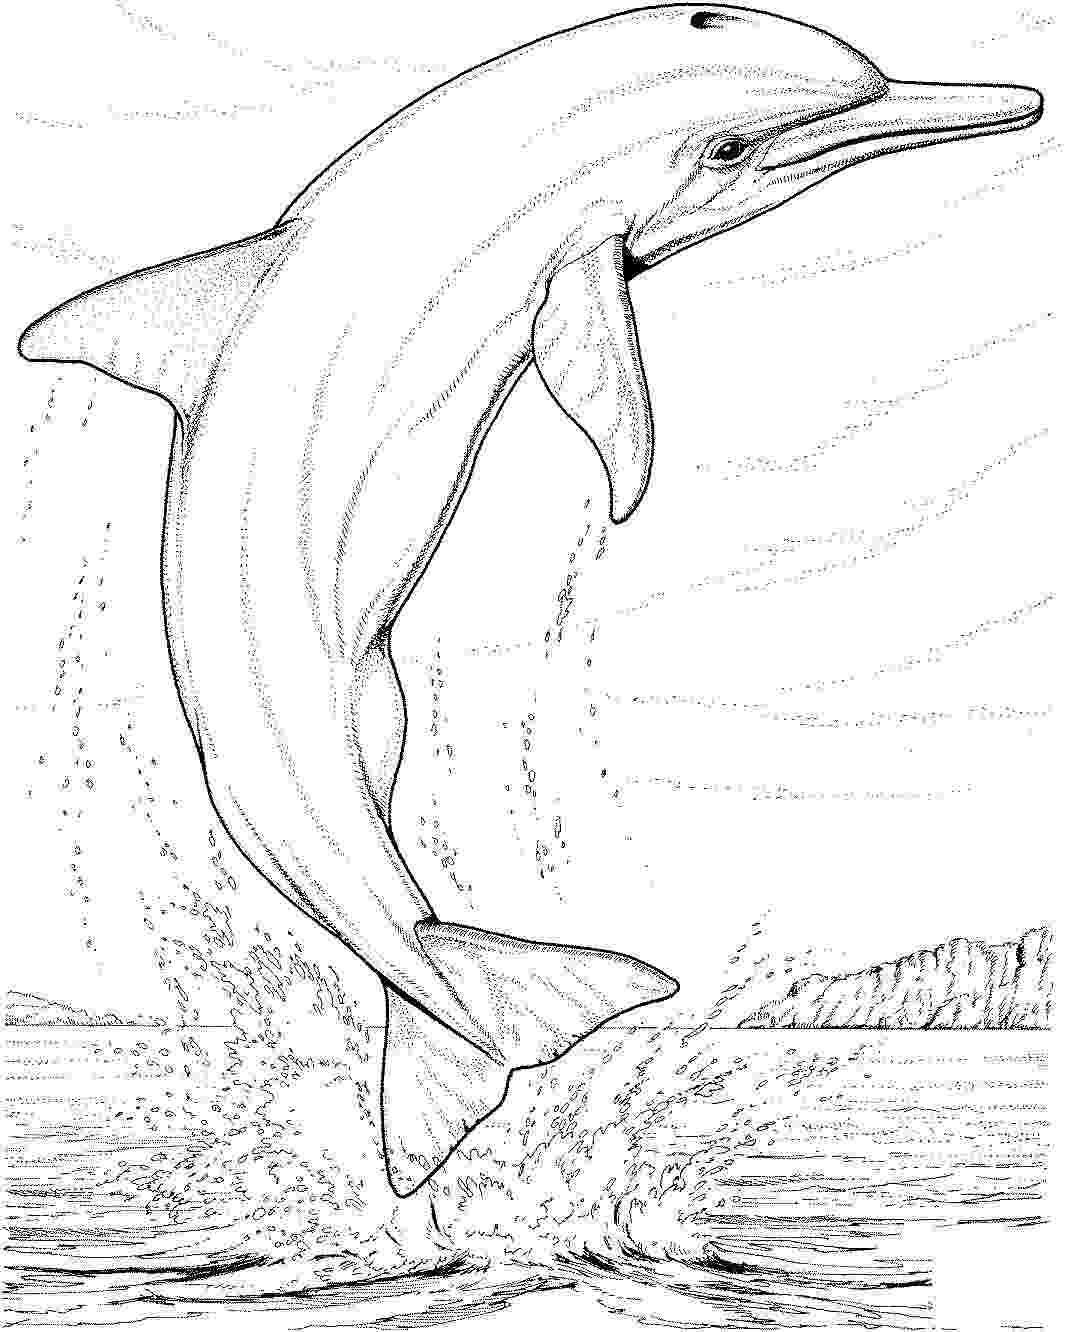 飞旋海豚在 Dolphin 空中进行杂技表演